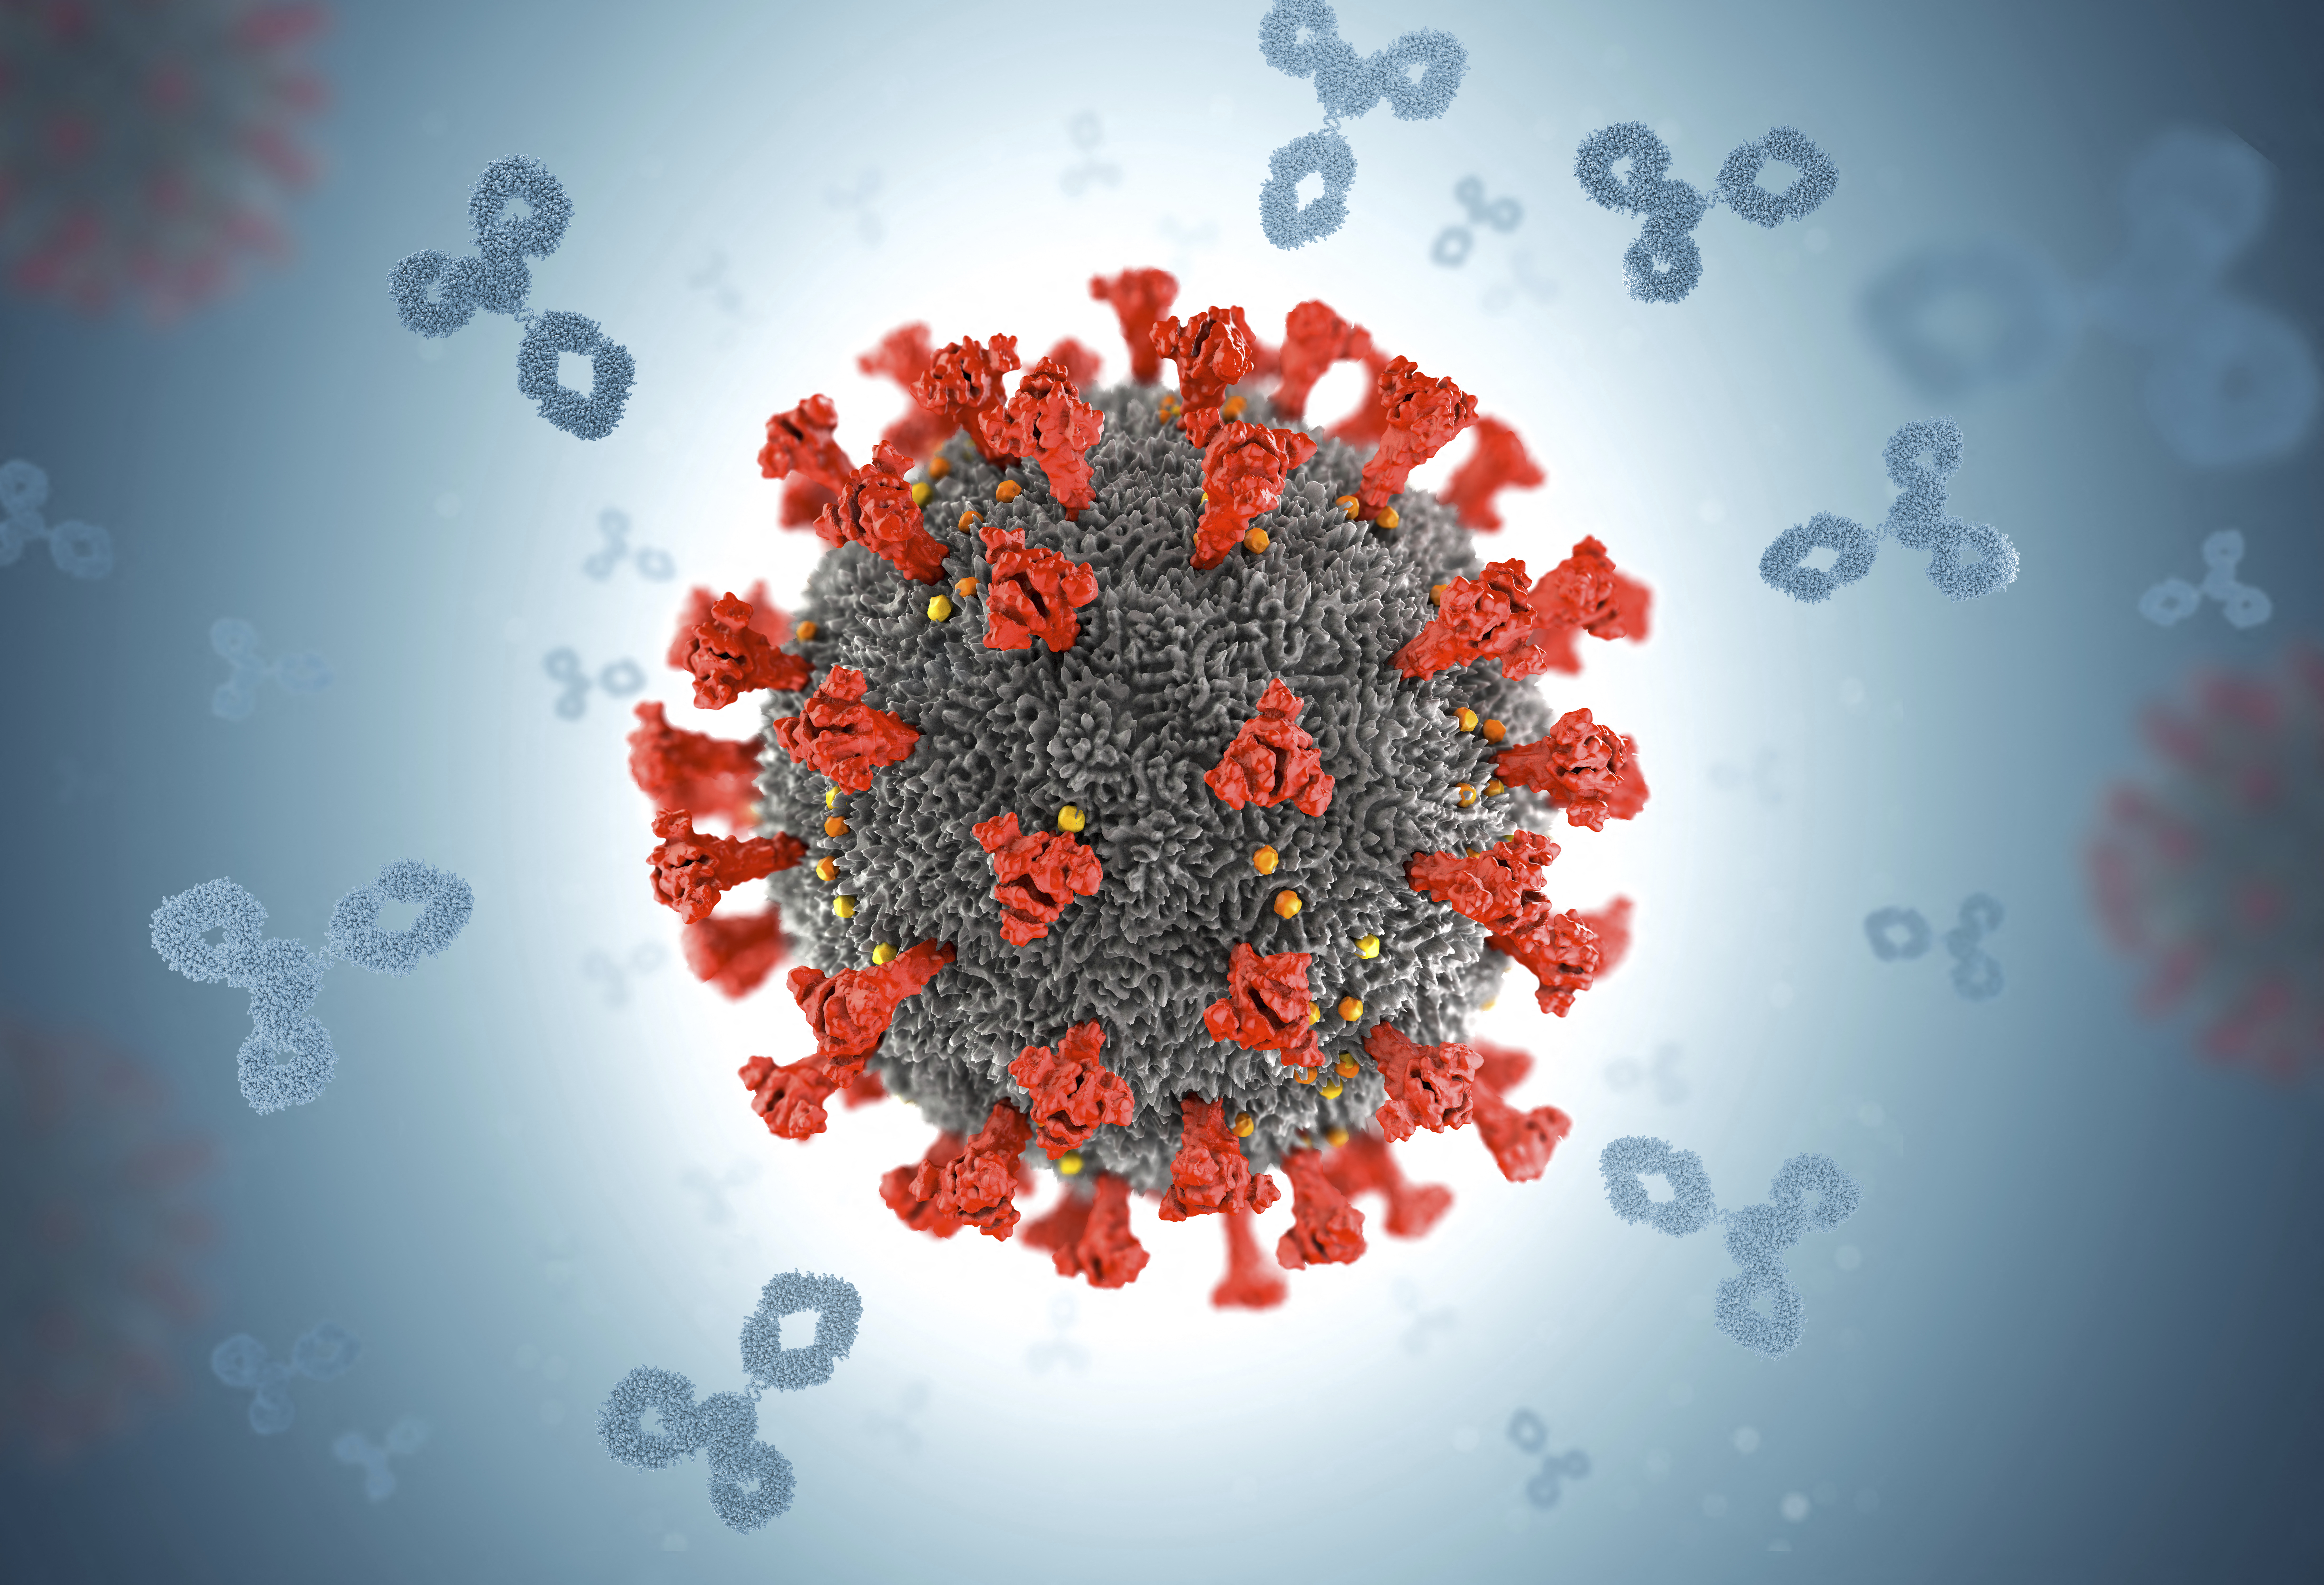 A tudományos közélet egyre inkább hajlik arra, hogy a koronavírus egy laborból szabadulhatott el